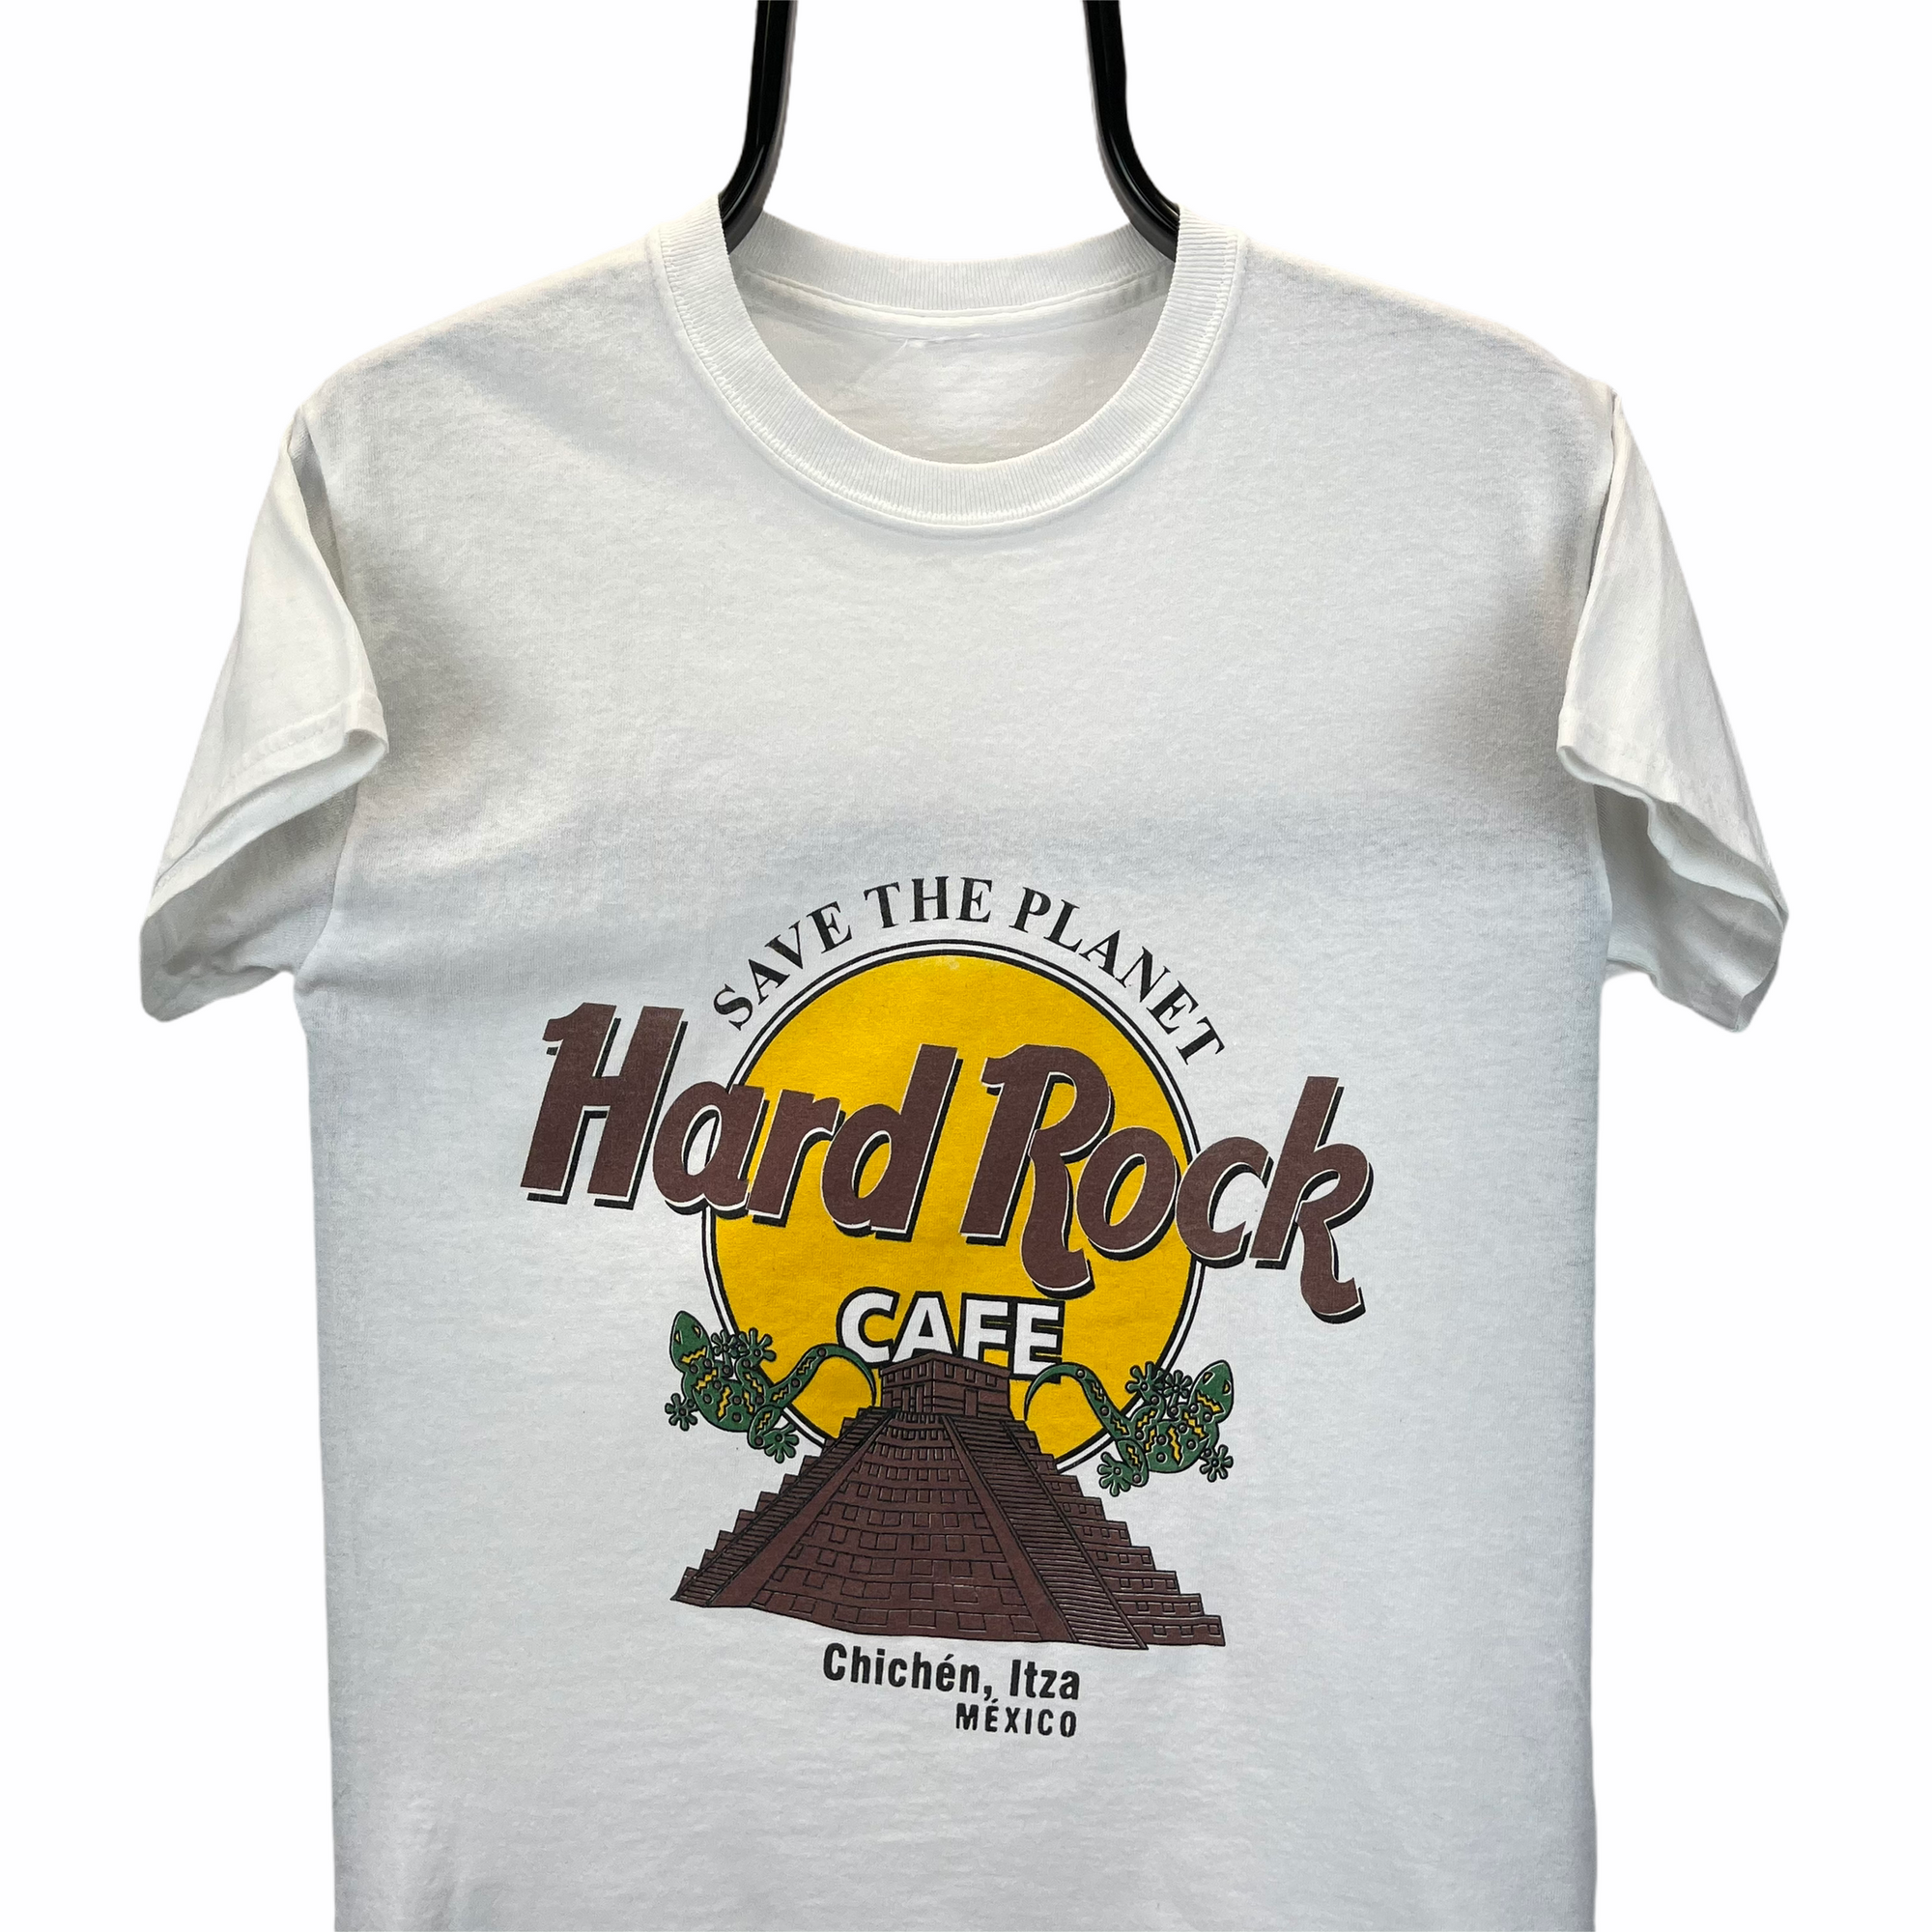 Hard Rock Cafe Itza Mexico Tee - Men's XS/Women's Small